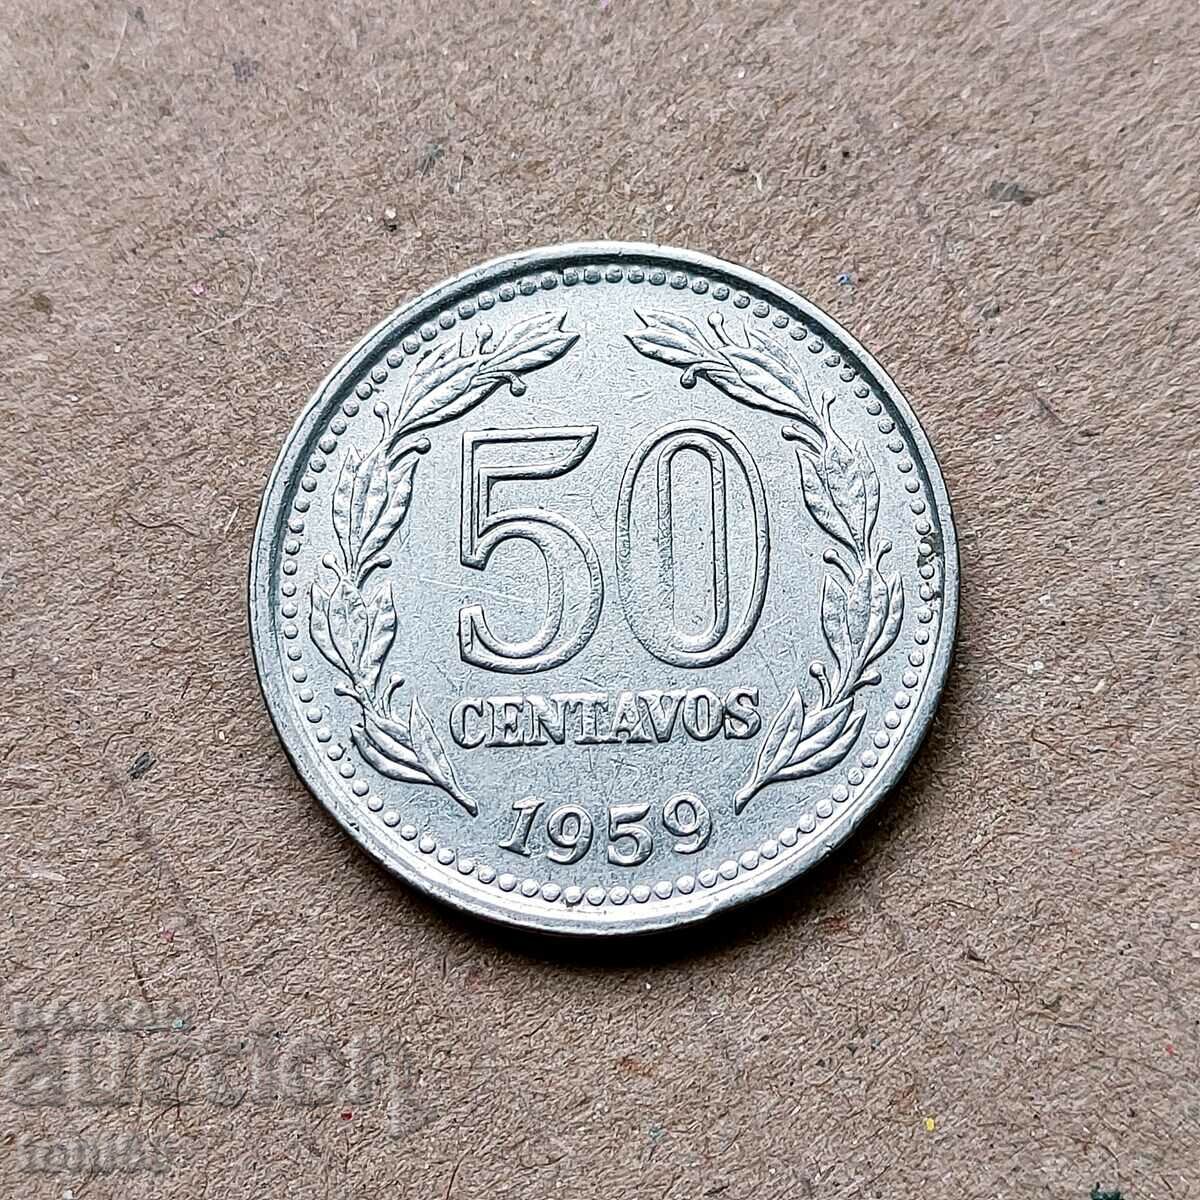 Аржентина 50 сентавос 1959